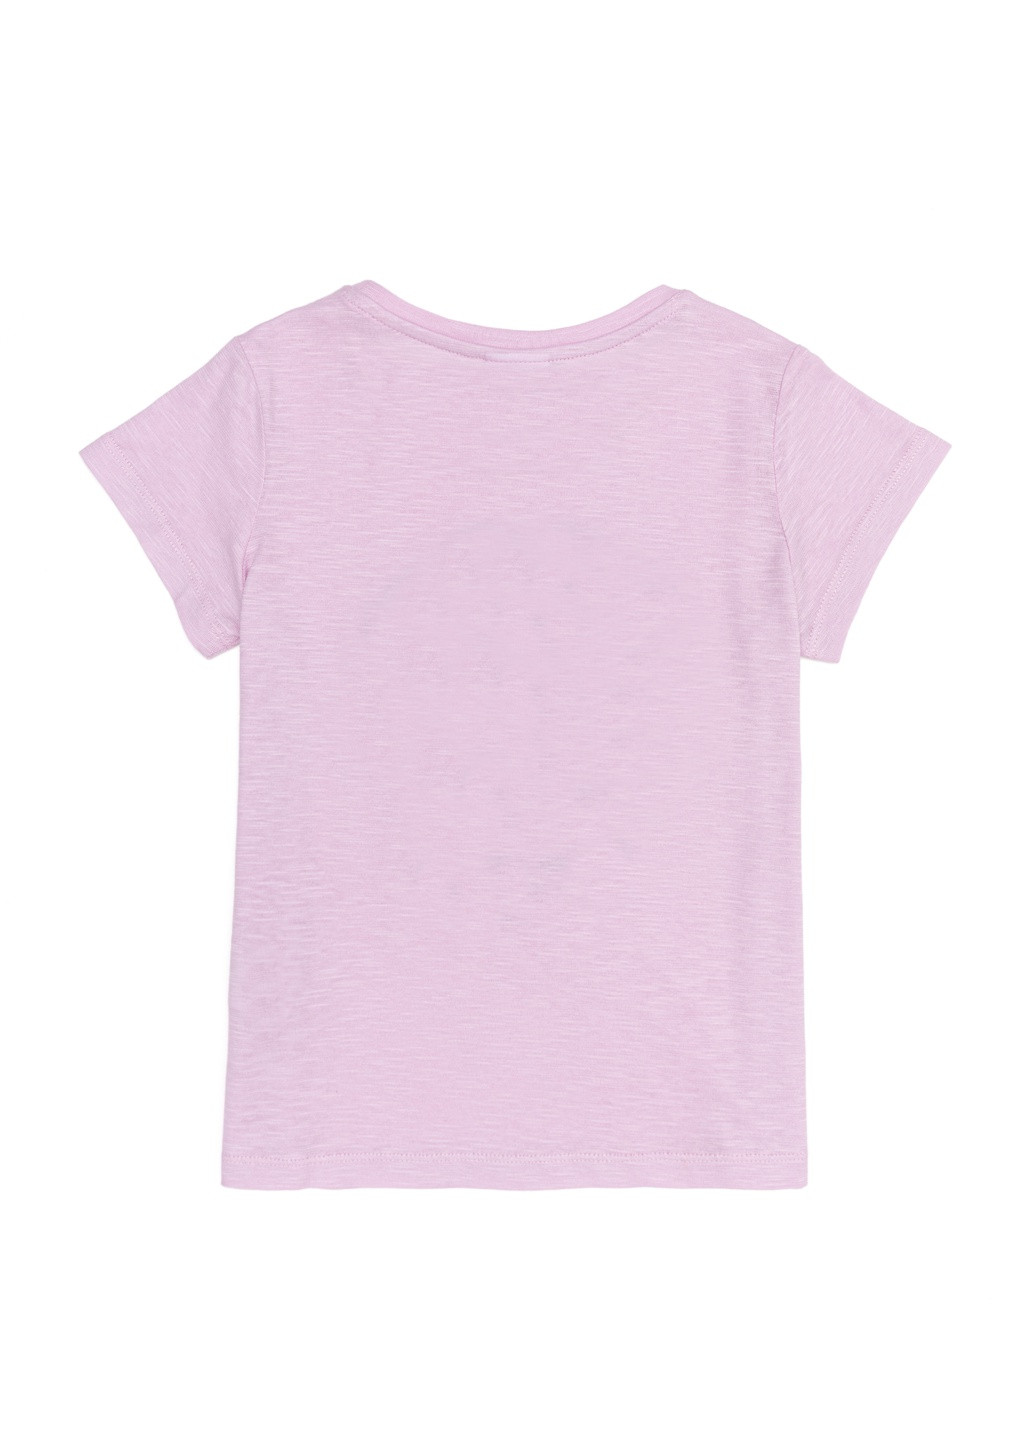 Розовая детская футболка-футболка u.s/ polo assn. на девочку для девочки U.S. Polo Assn.